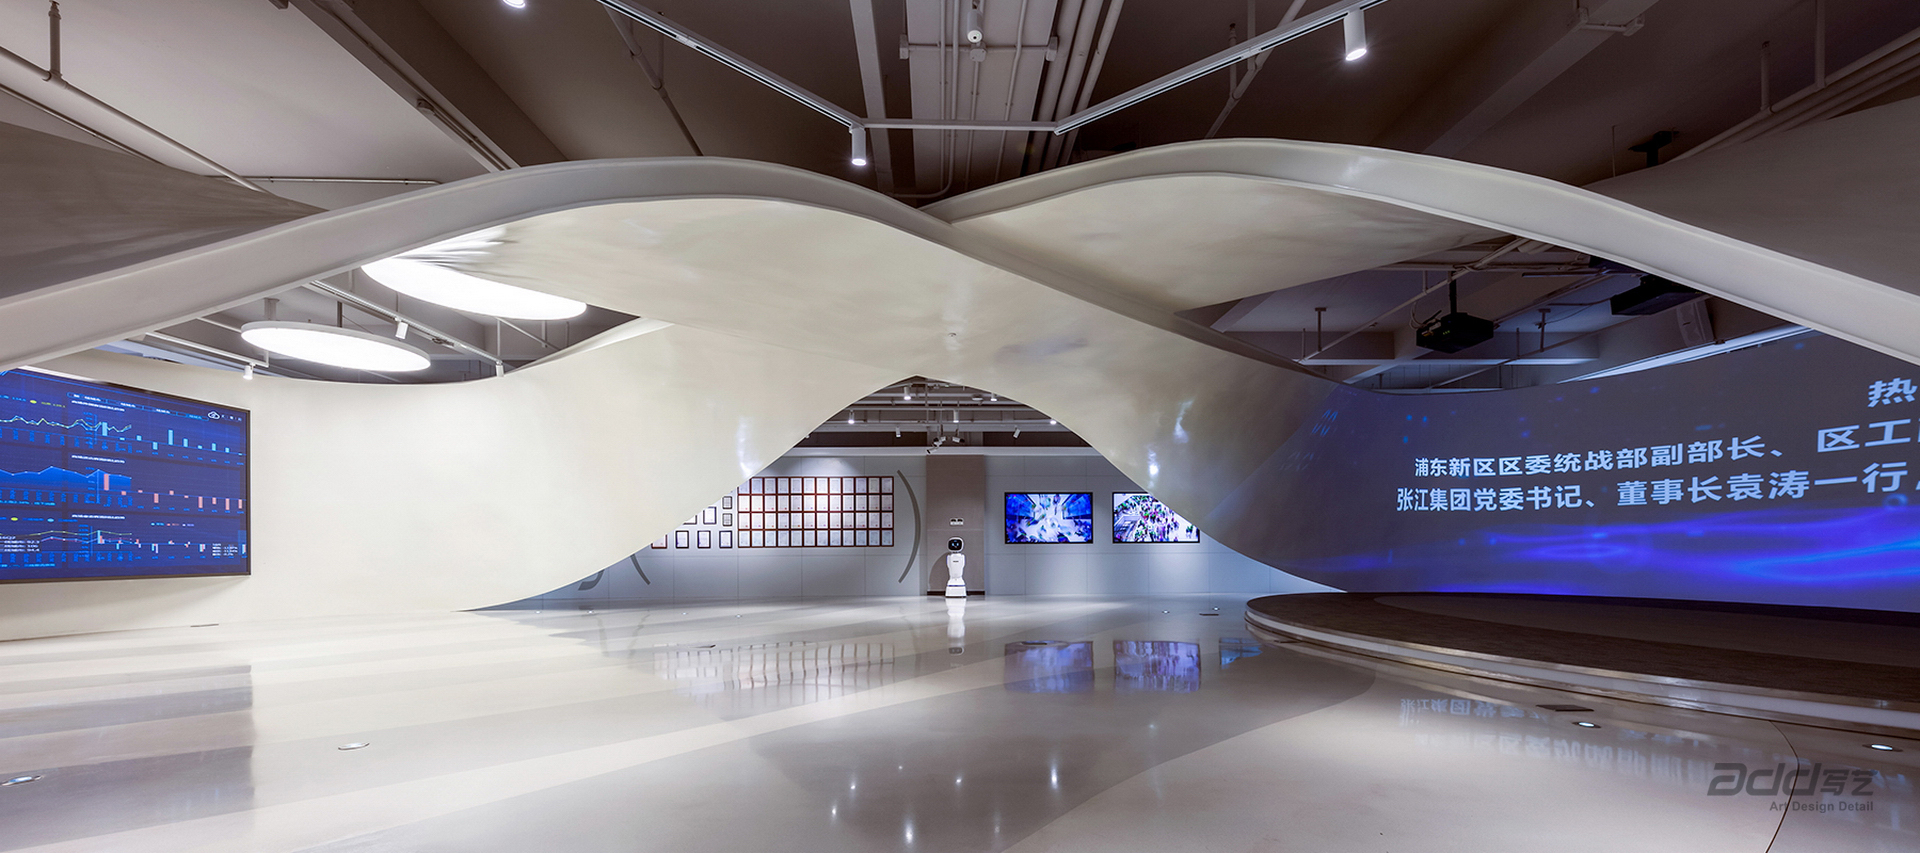 匯納科技辦公空間設計-展廳3-pc